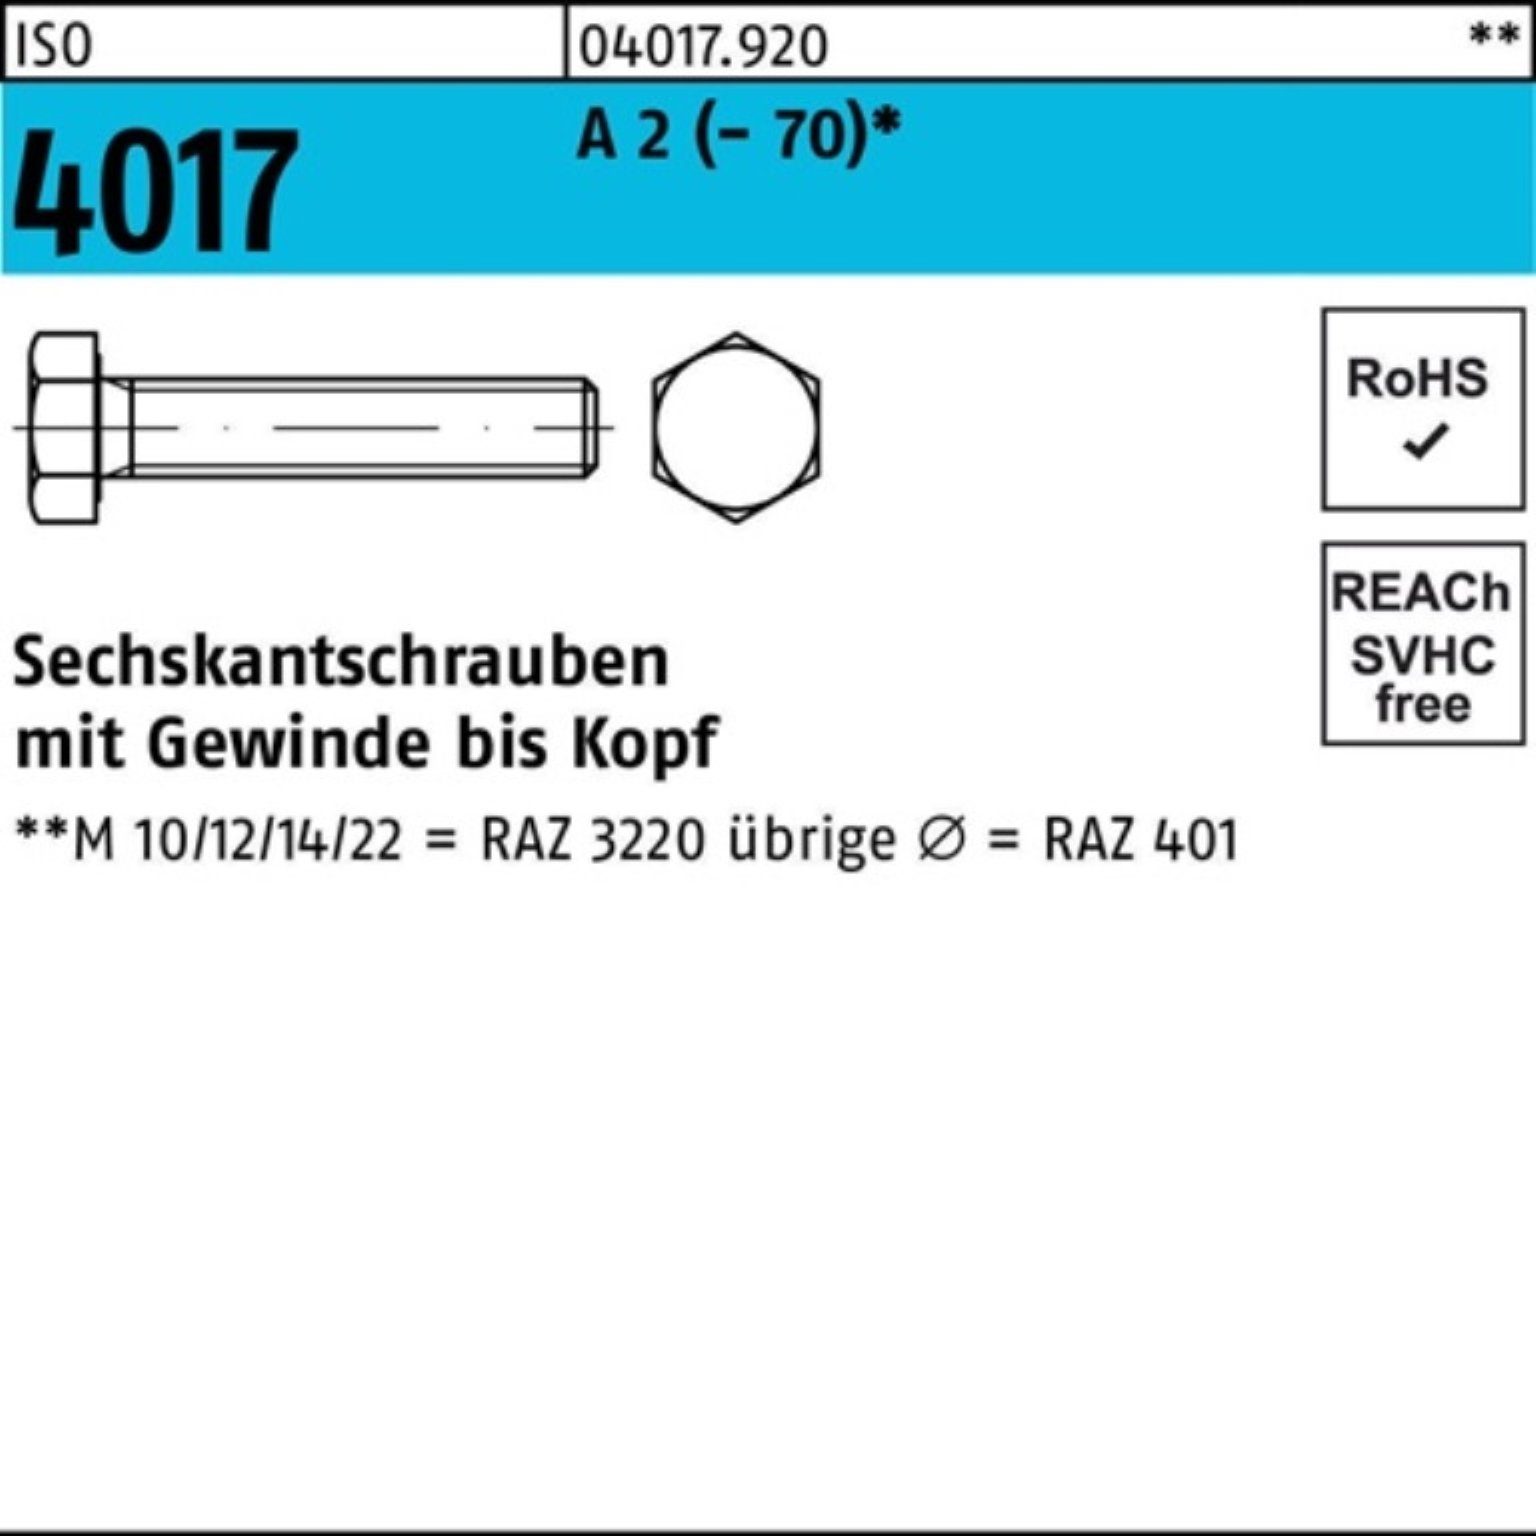 Bufab Sechskantschraube 100er Pack Sechskantschraube ISO 4017 VG M16x 45 A 2 (70) 50 Stück